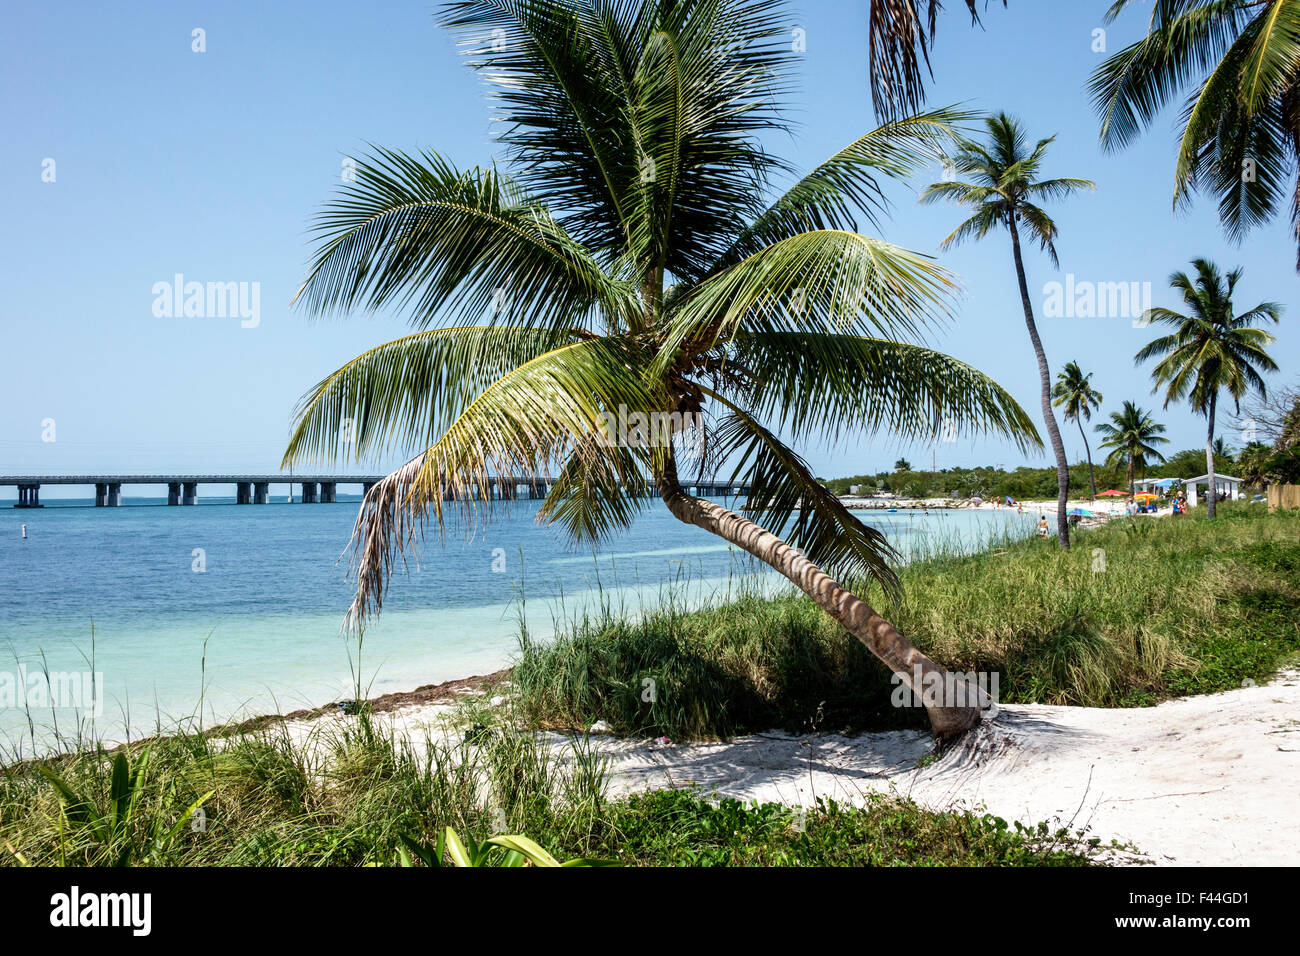 Florida Keys, autoroute route 1 Overseas Highway, Bahia Honda State Park, Key, plage, Golfe du Mexique, palmier, FL150510032 Banque D'Images